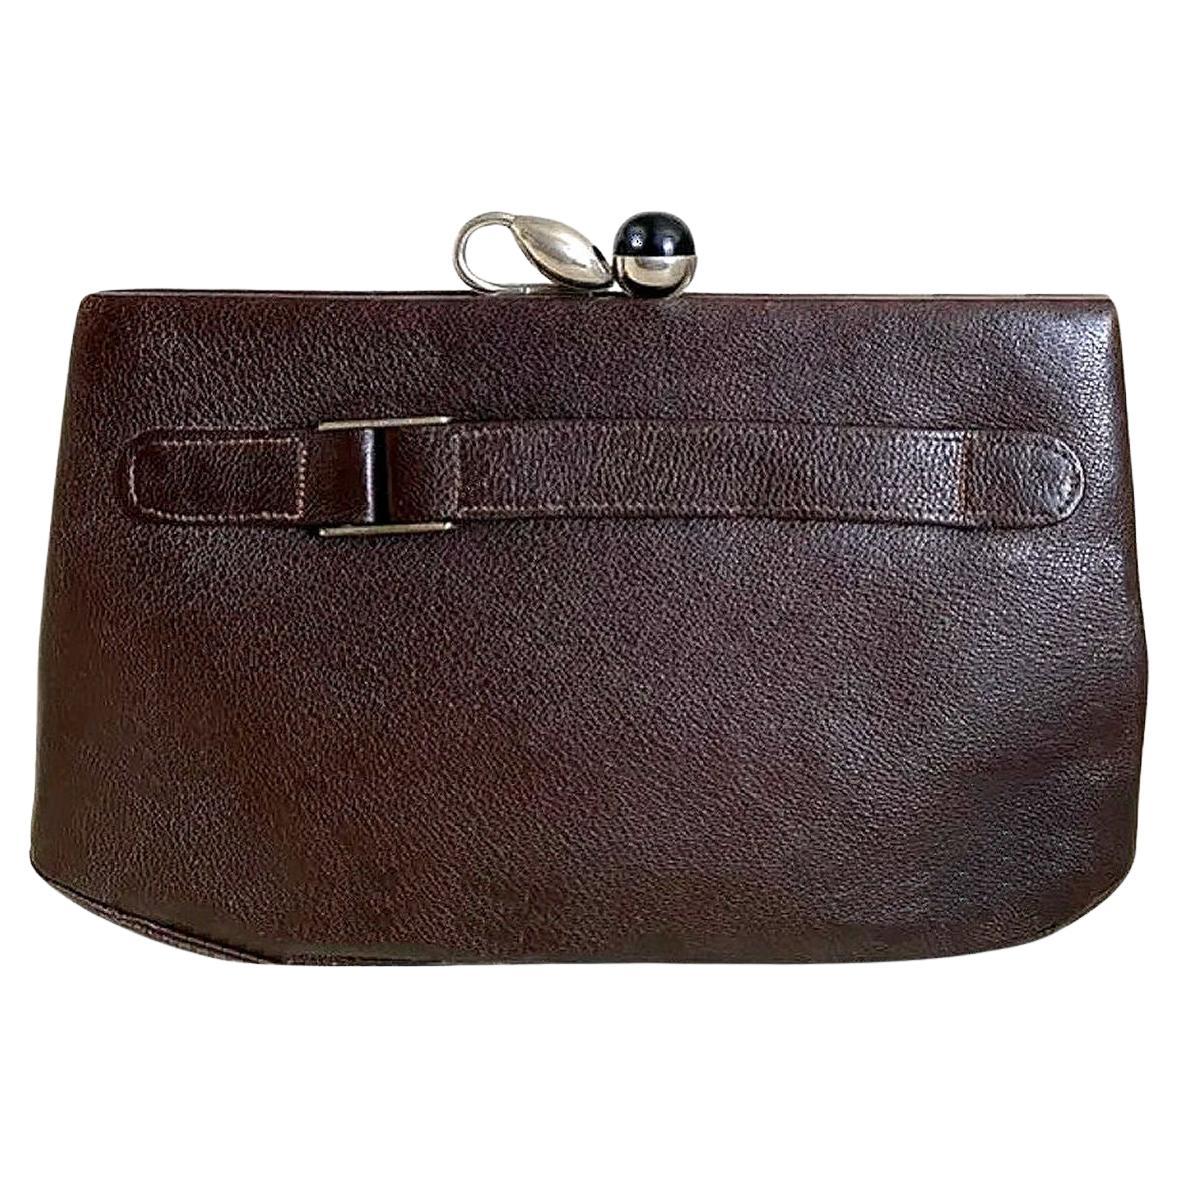 Art Deco Modernist Original Ladies Leather & Chrome Clutch bag Purse, c1930 For Sale